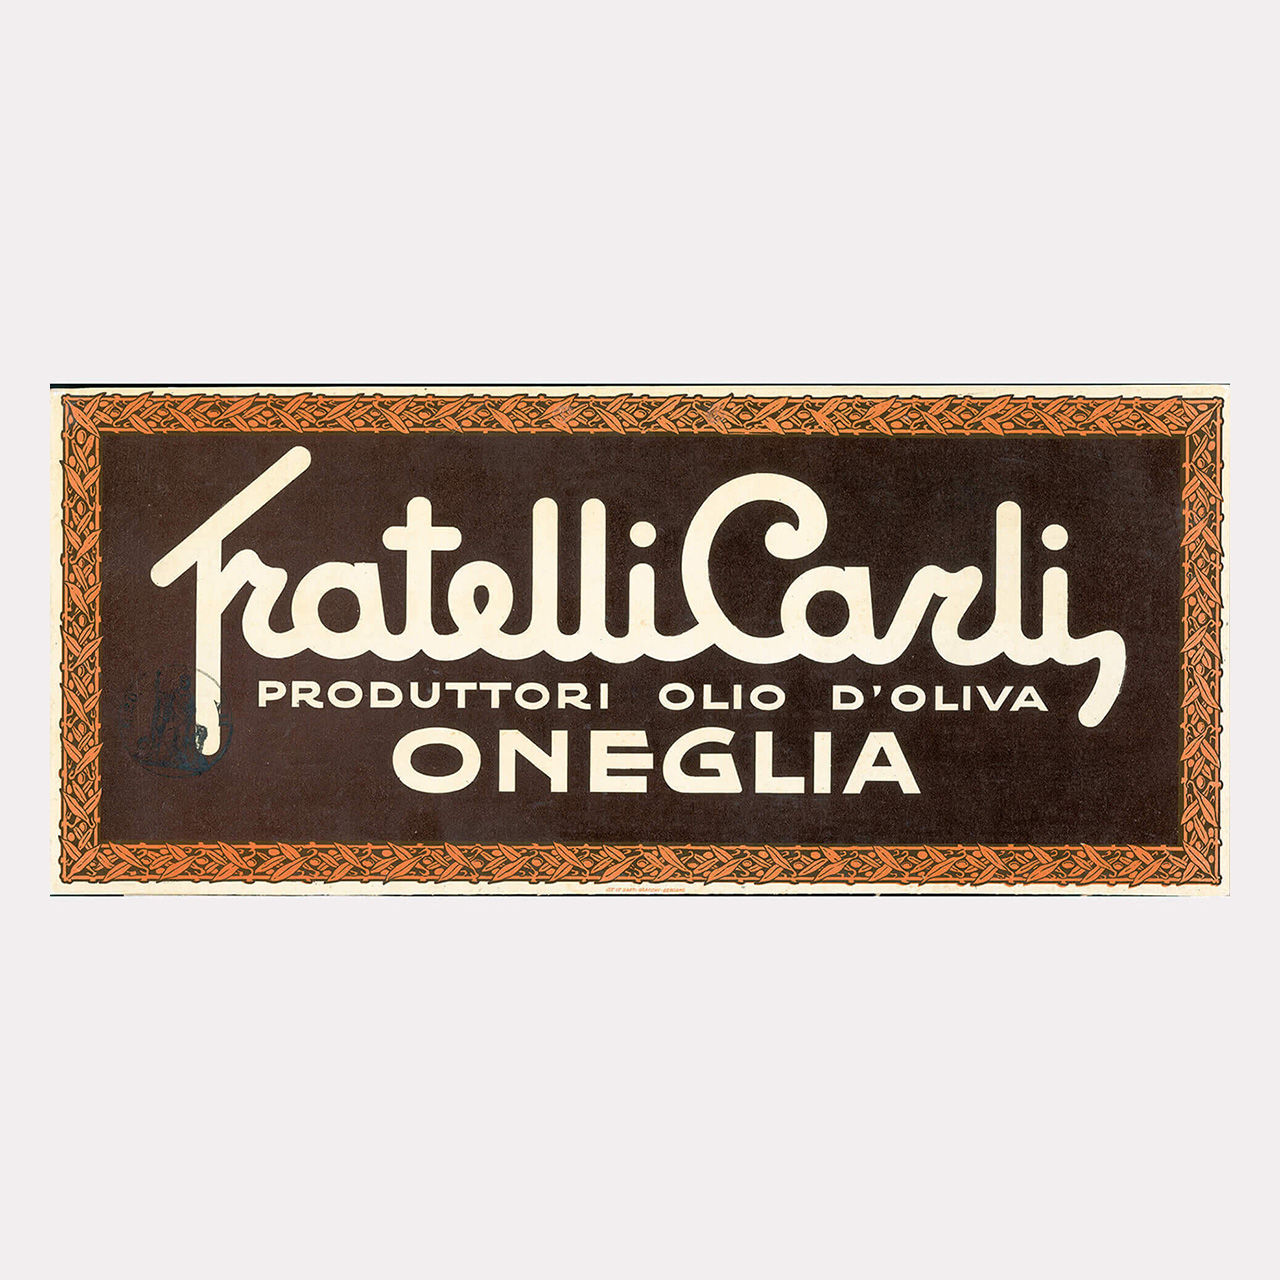 Le premier logo Fratelli Carli